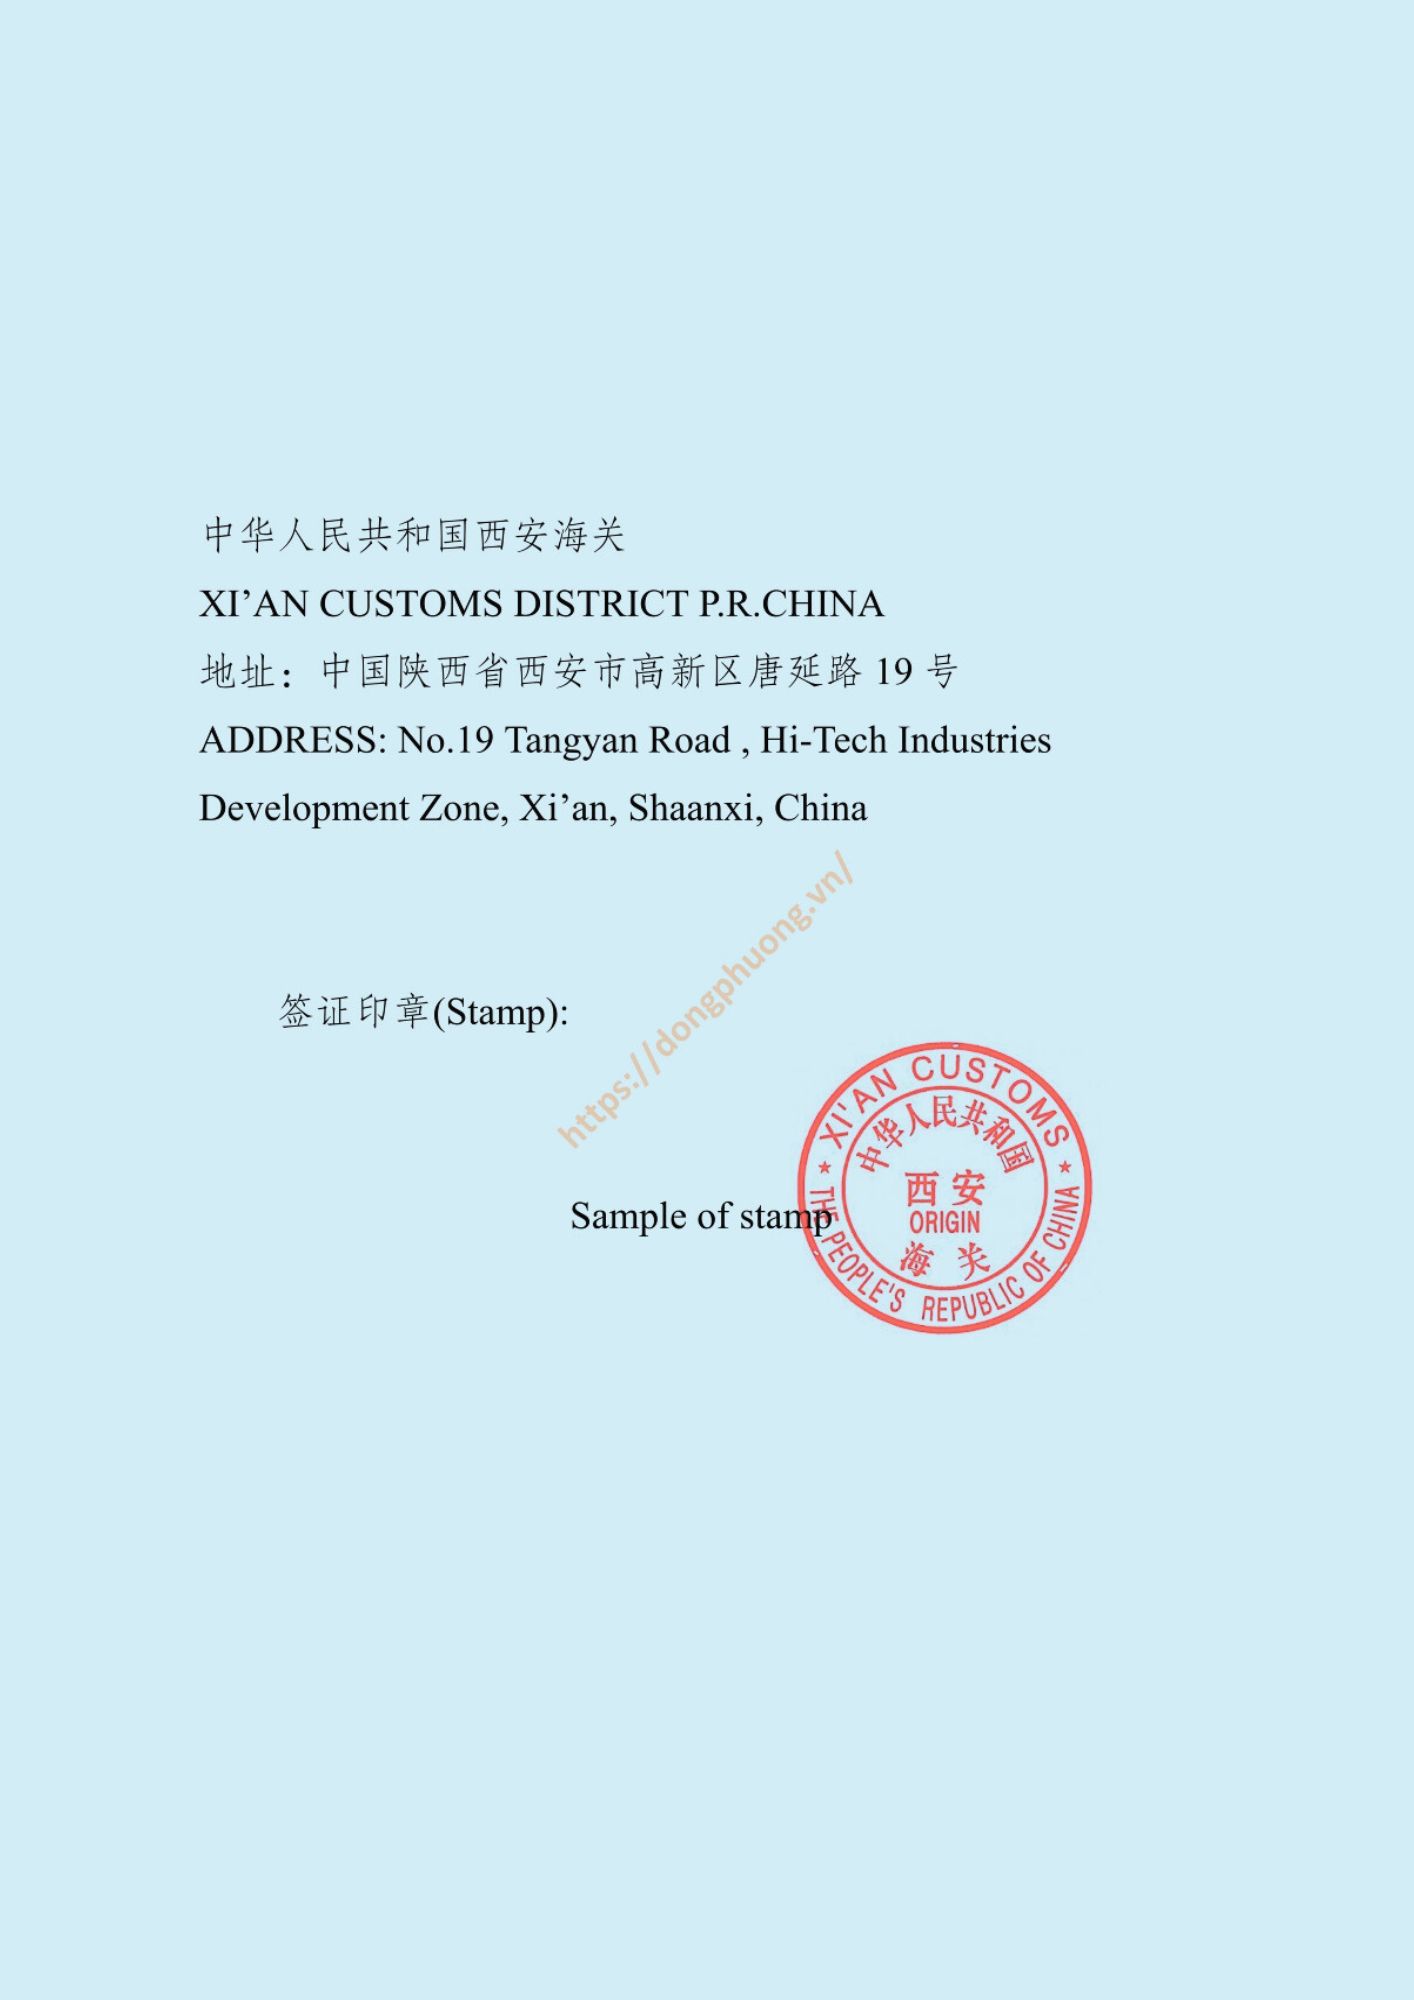 mẫu dấu và chữ ký form E 2024 Xi_an customs